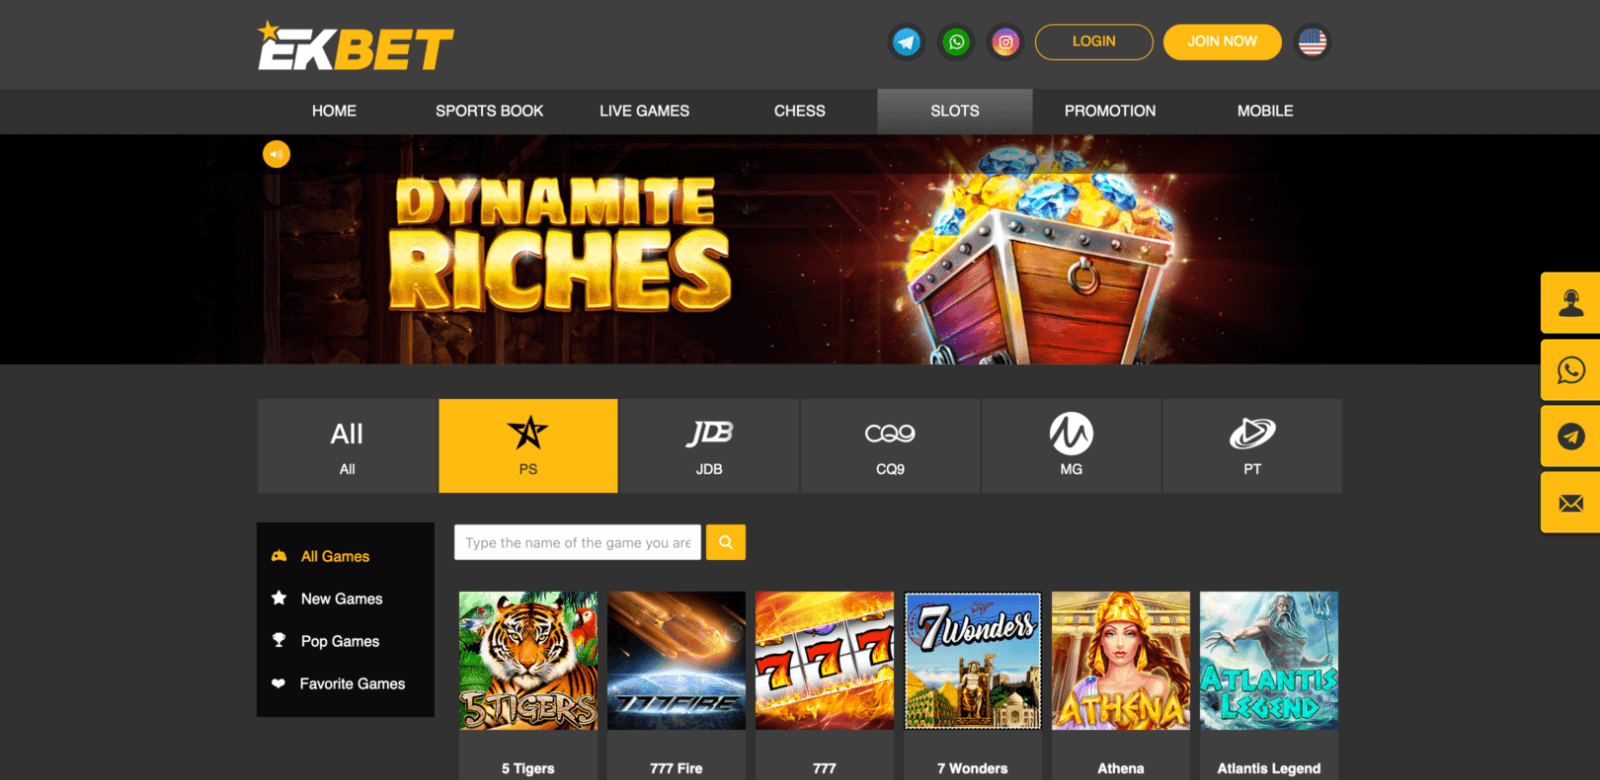 Slots games at Ekbet website